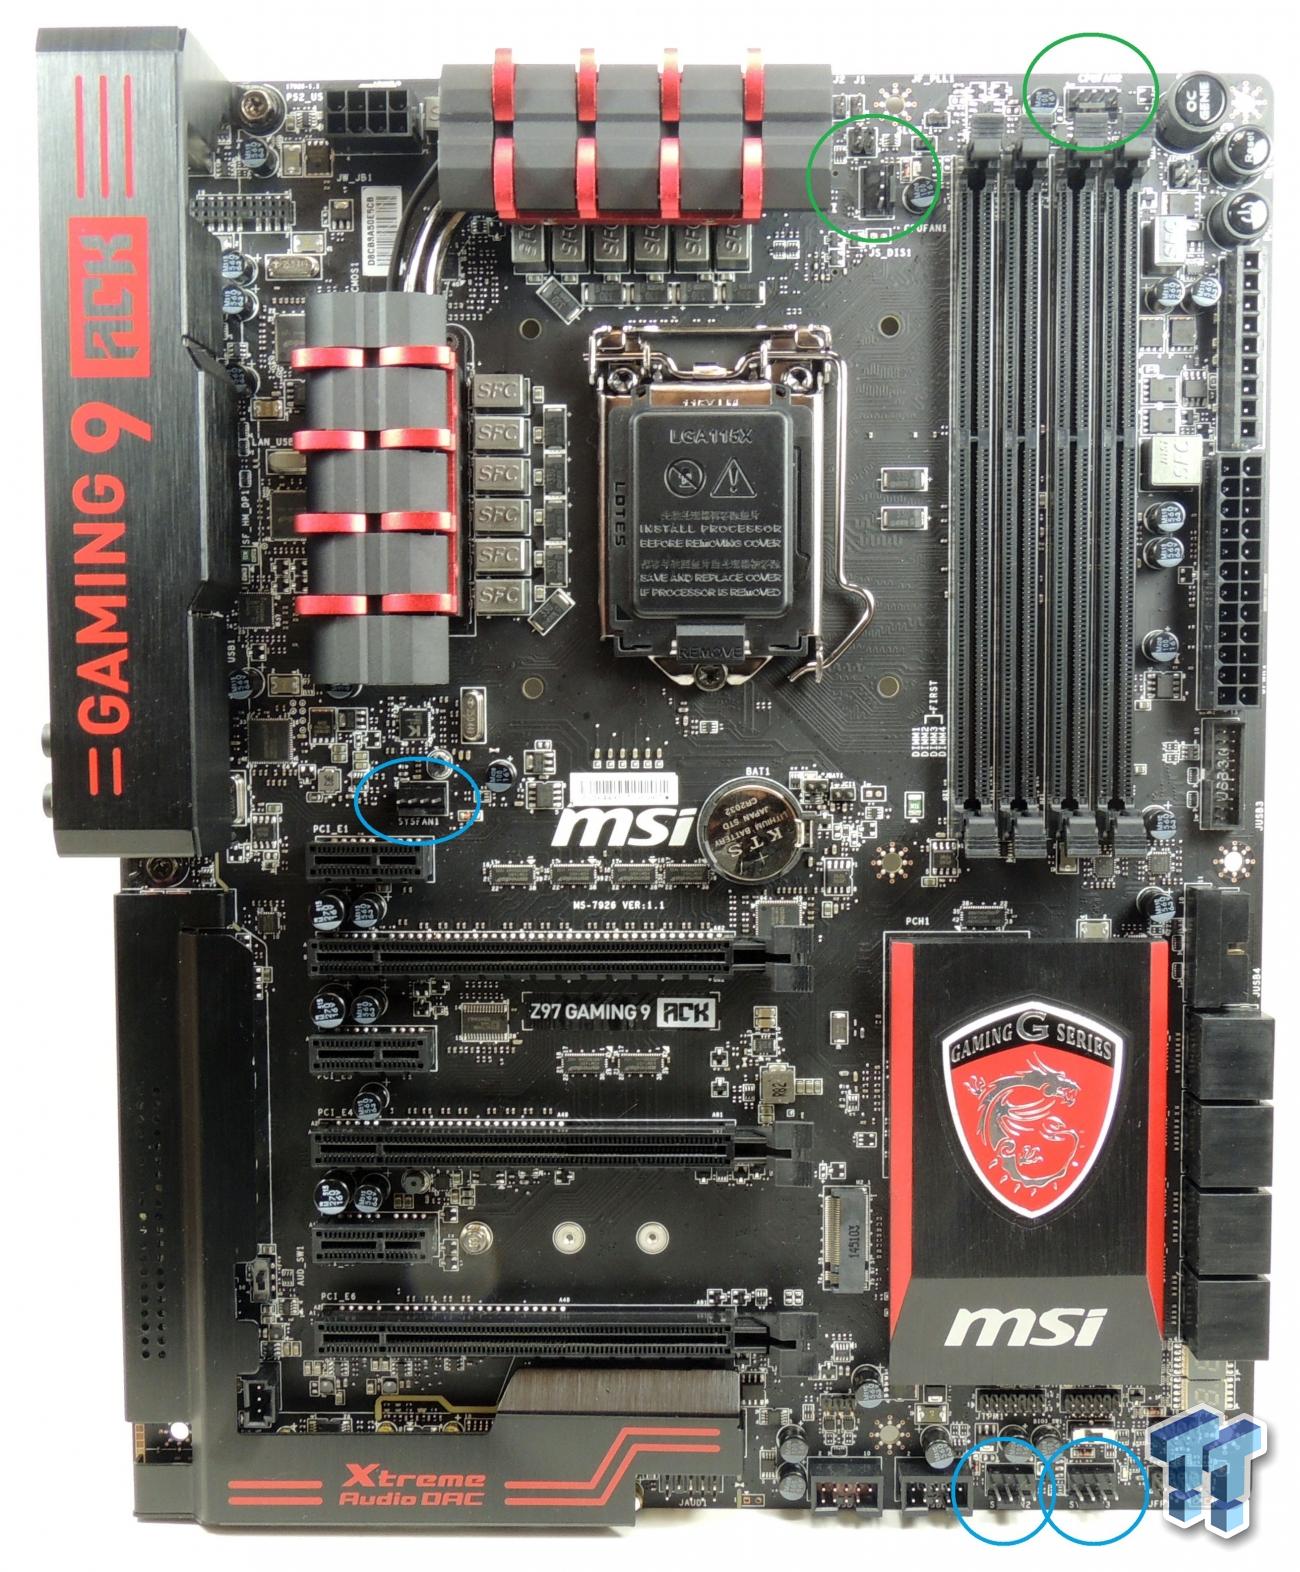 MSI Z97 Gaming 9 ACK (Intel Z97) Motherboard Review | TweakTown